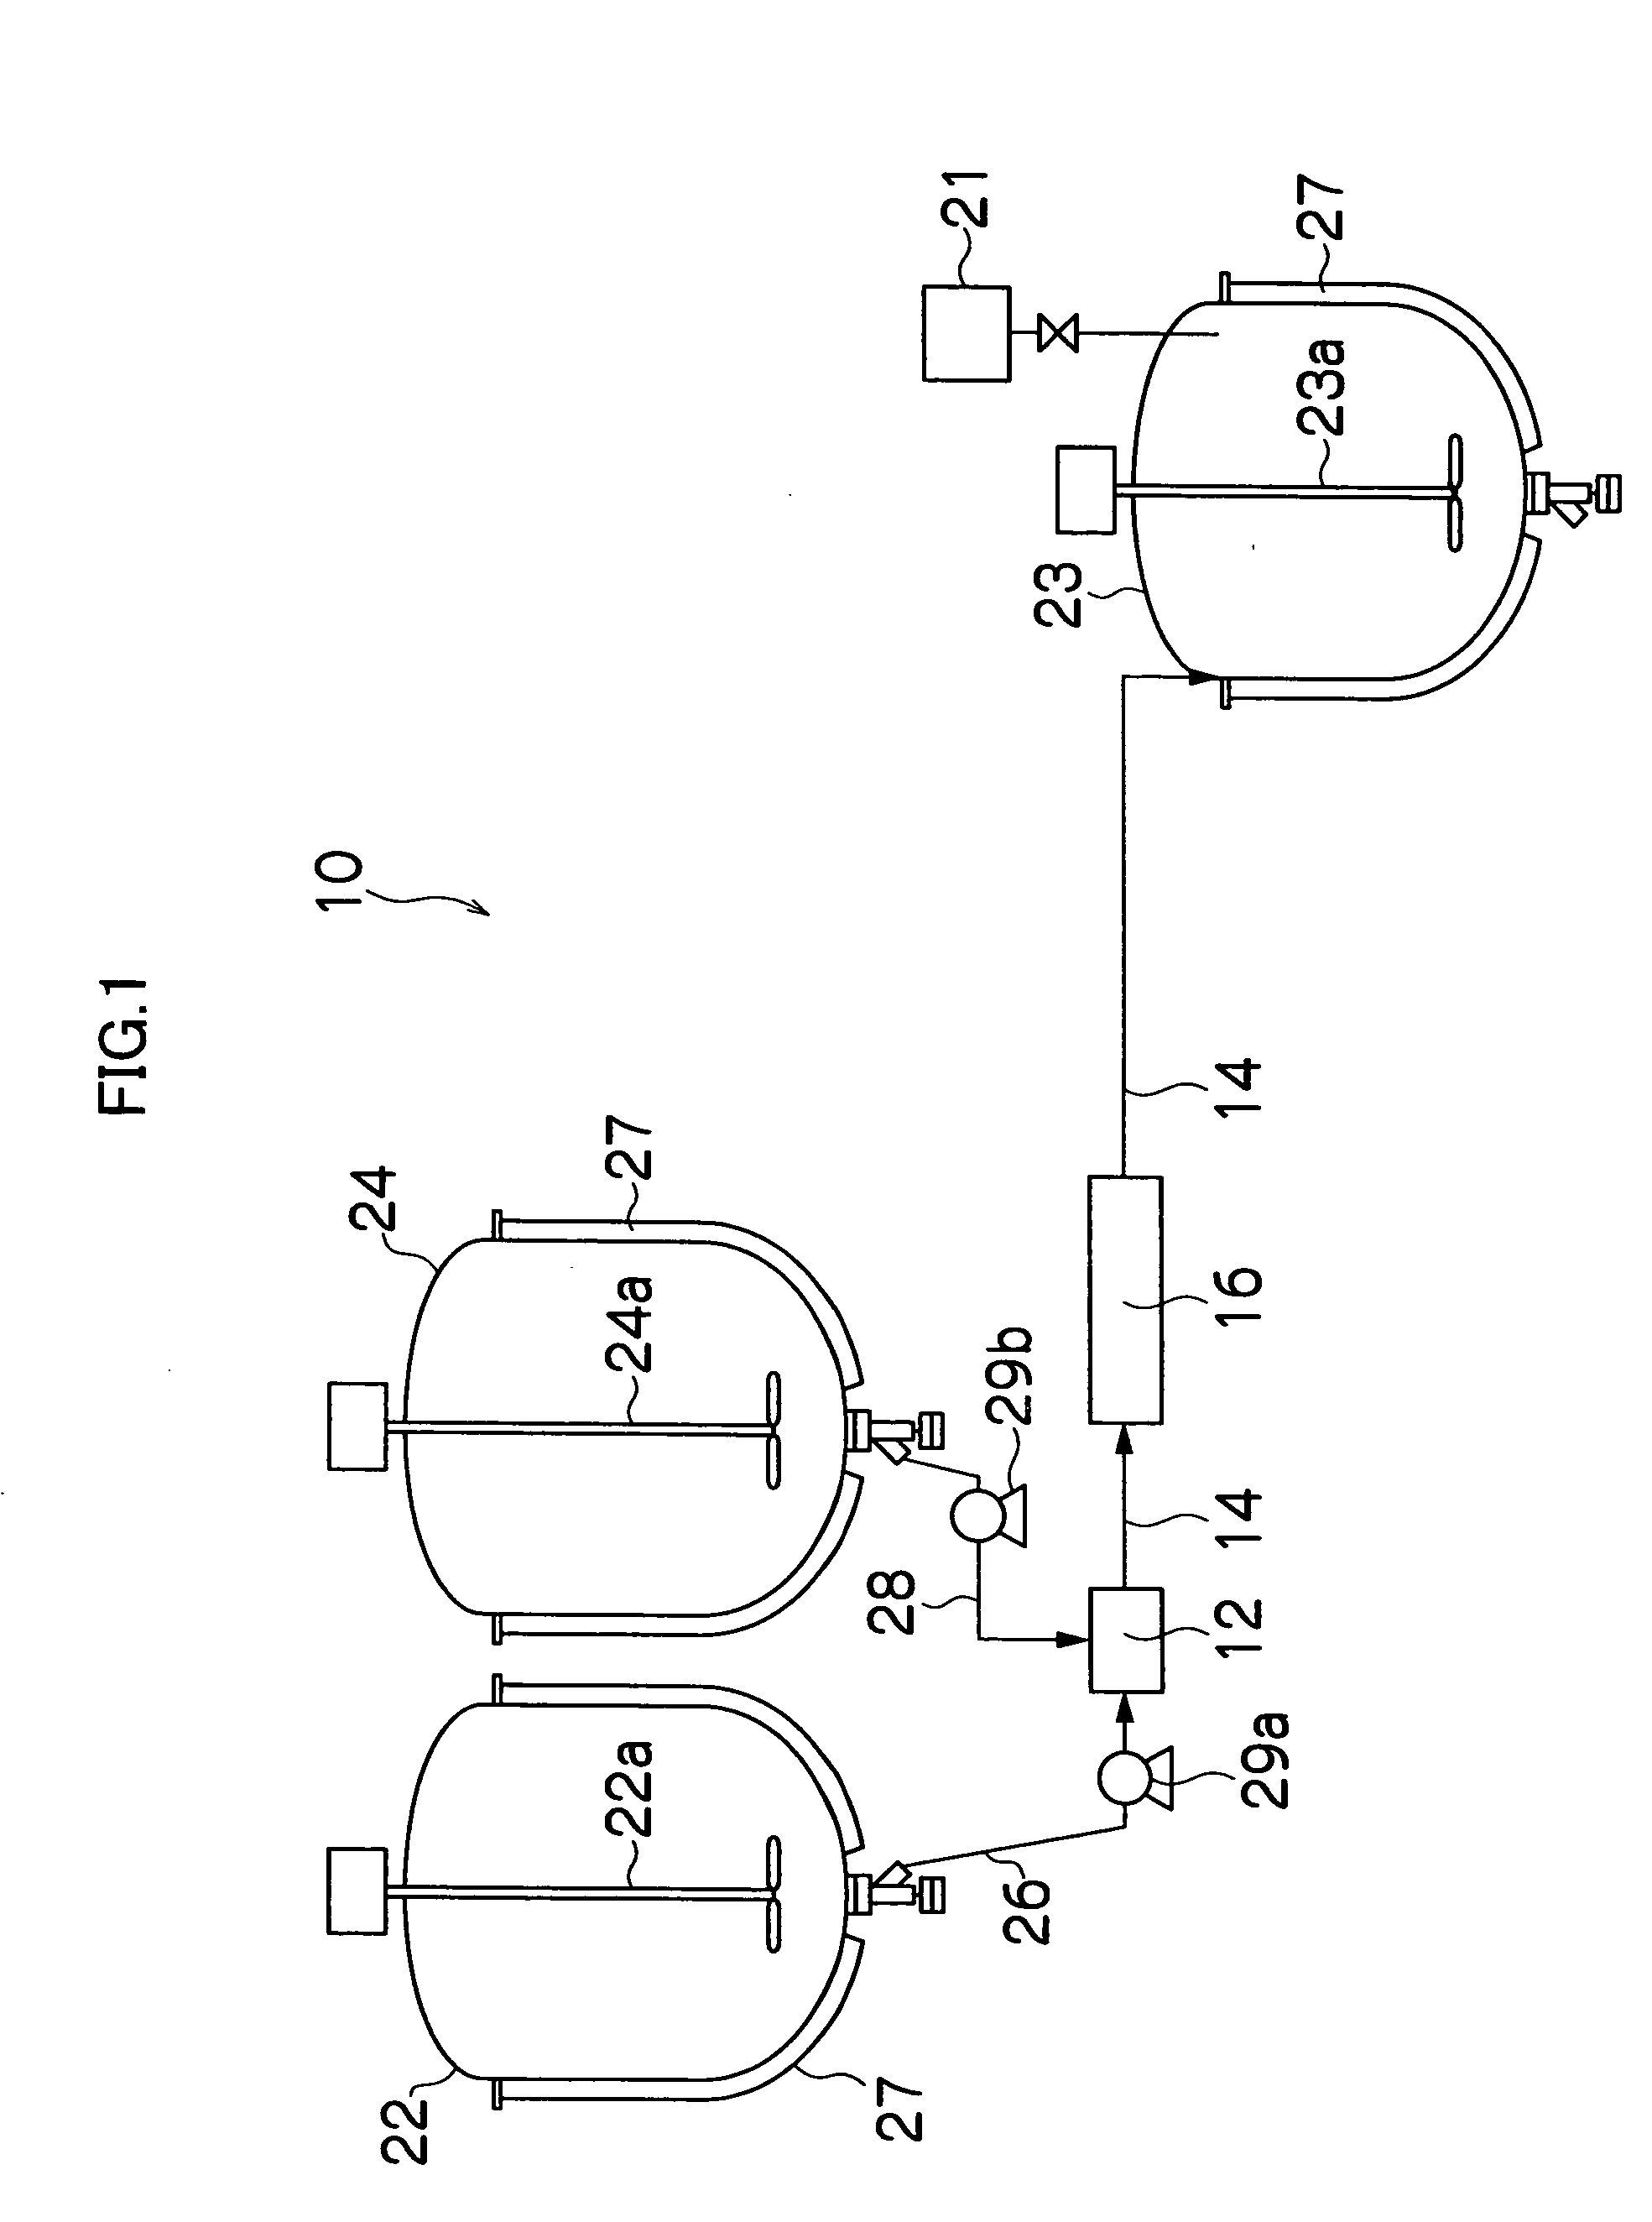 Gas-liquid separation method and unit